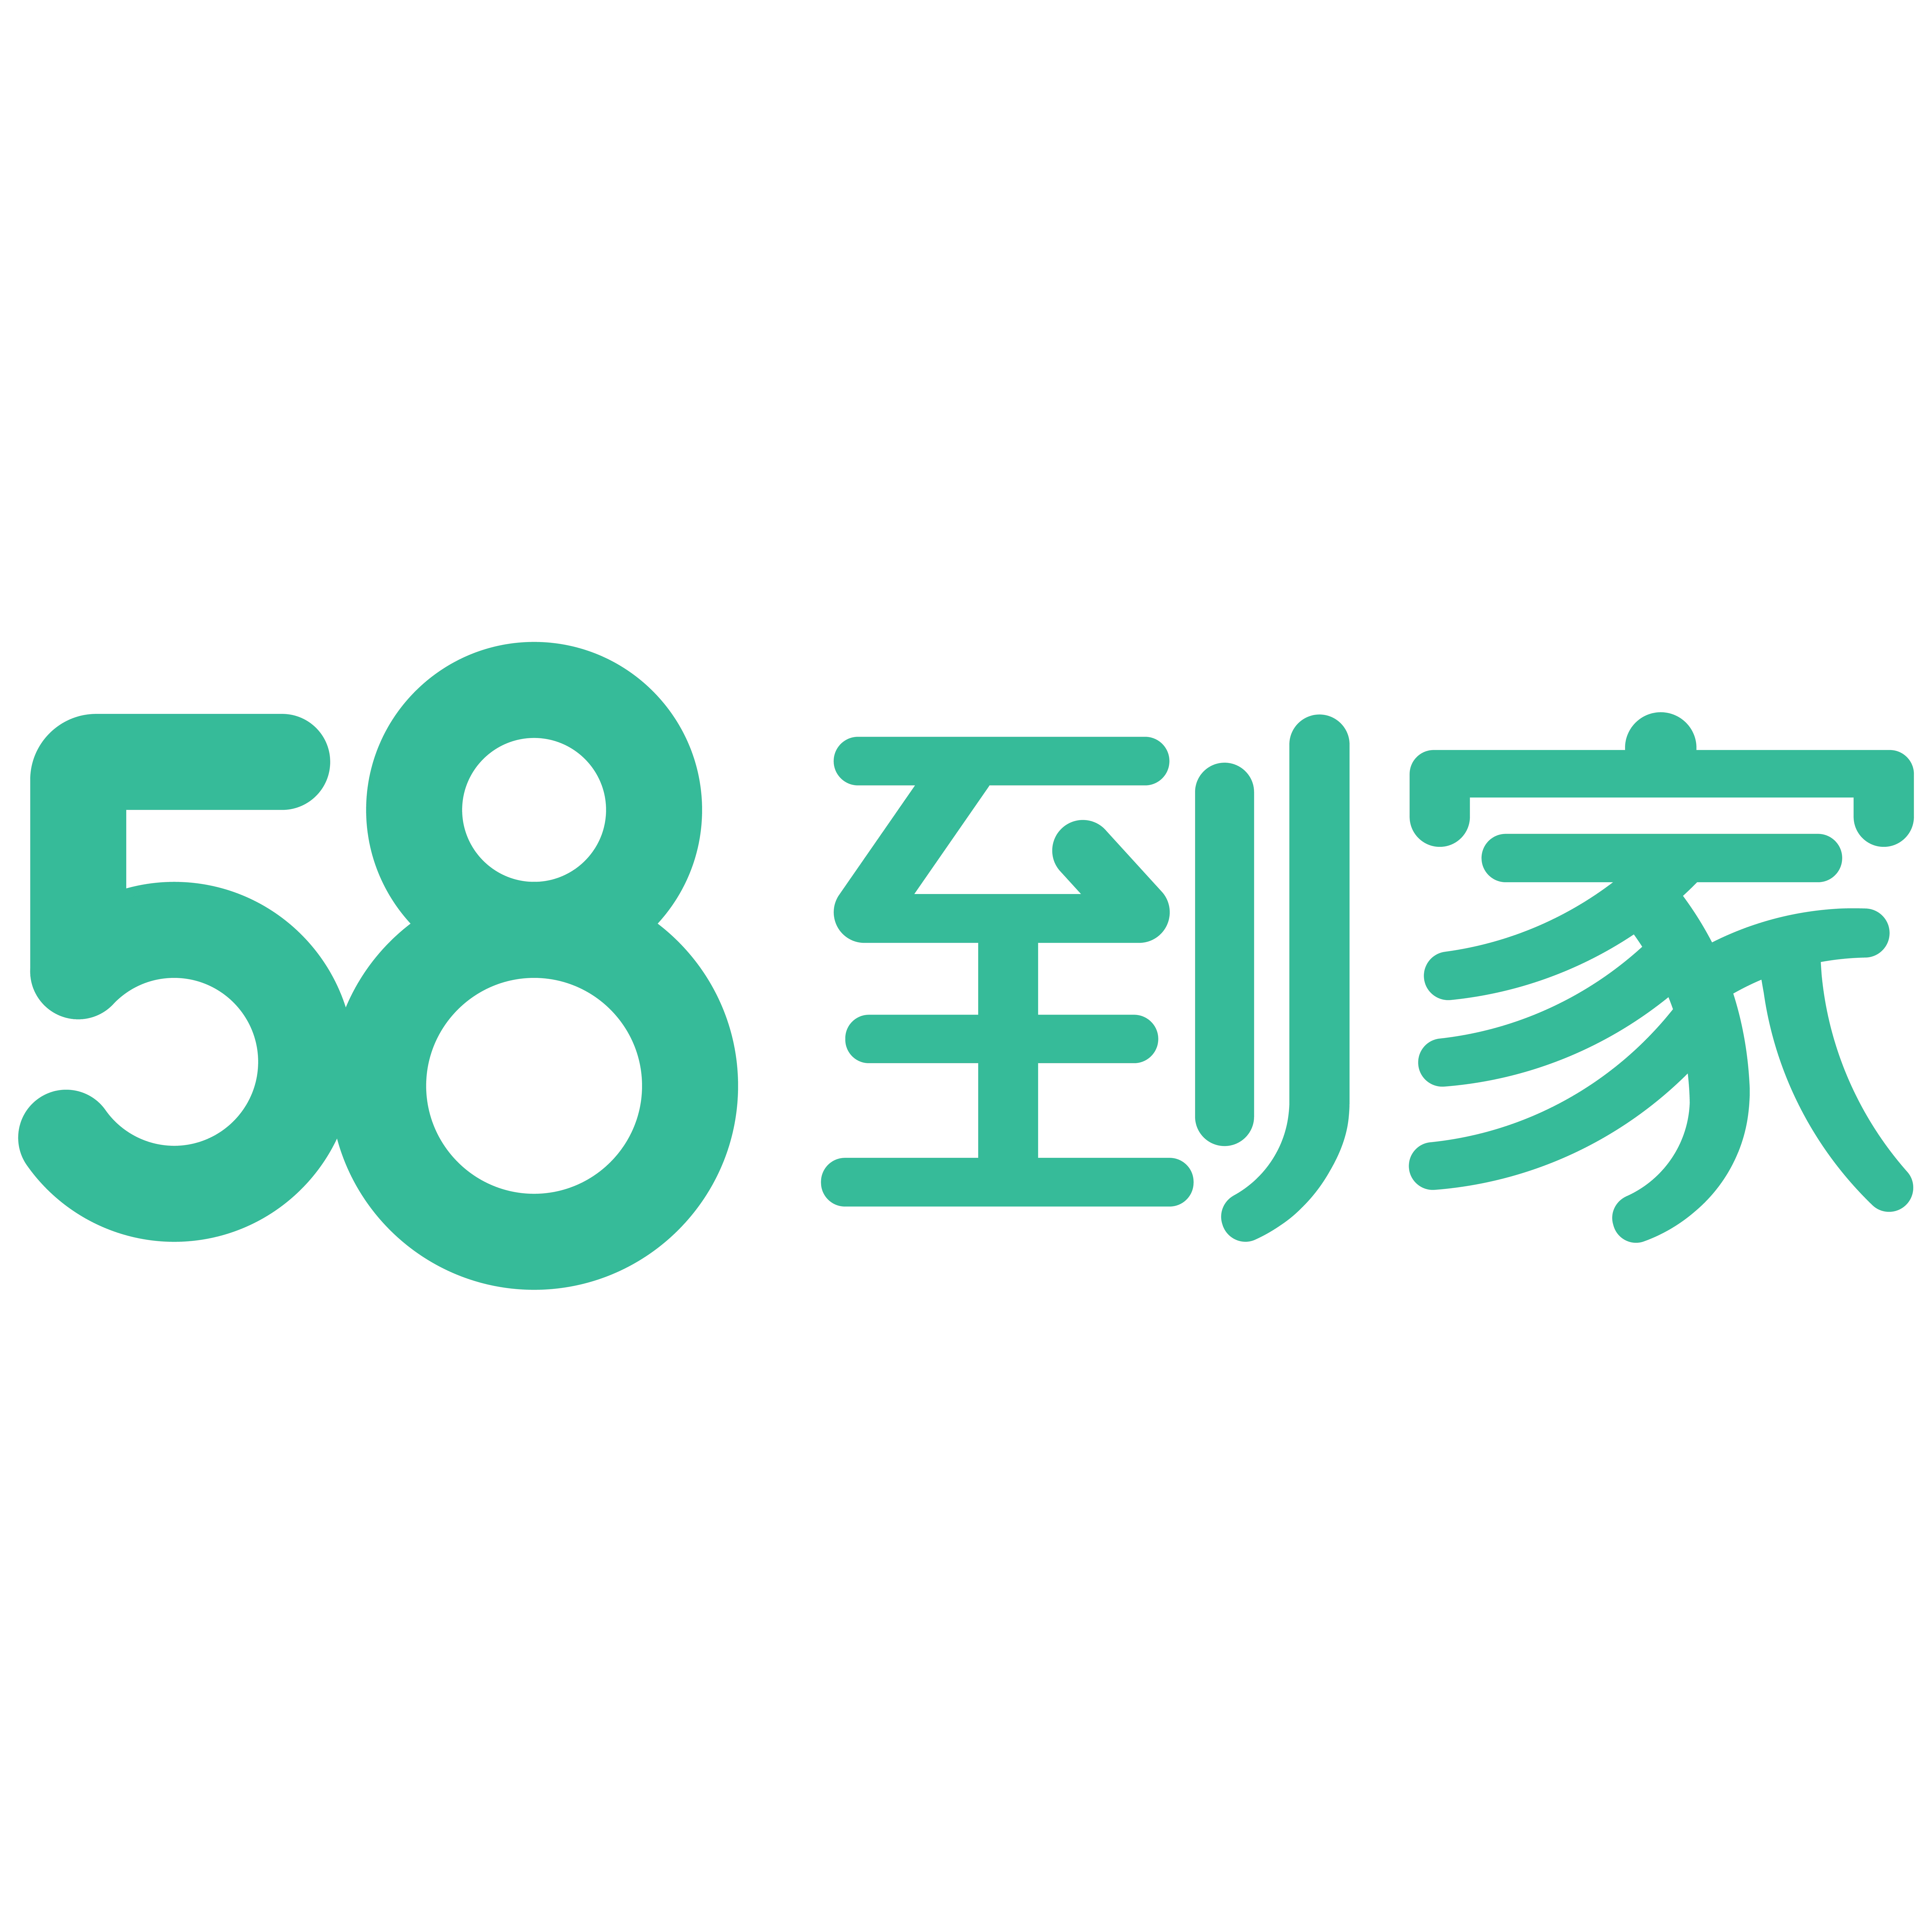 北京五八信息技术有限公司广州分公司